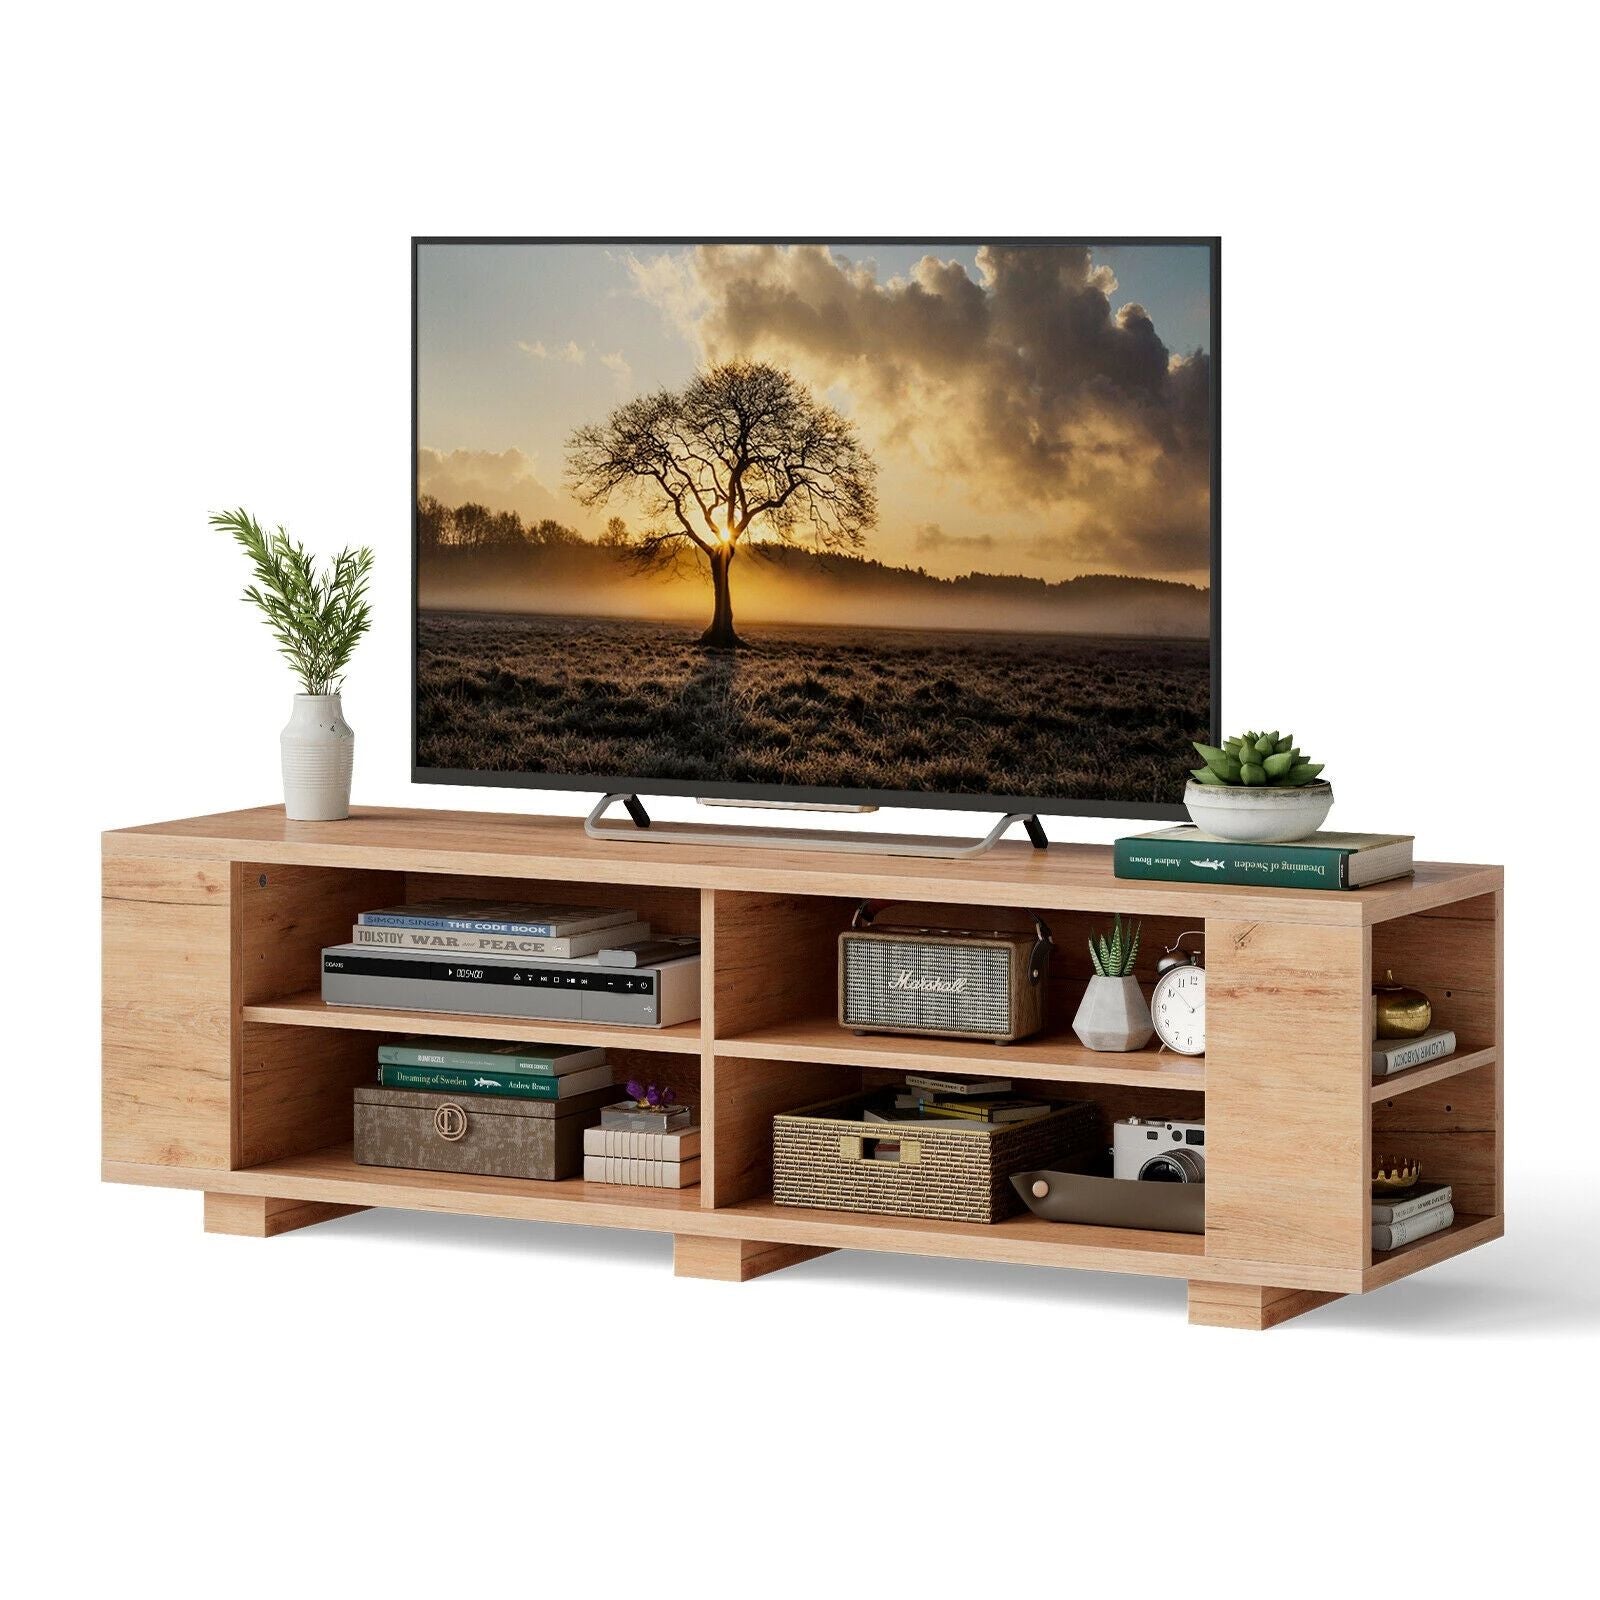 تسوق الان طاولة تلفزيون عصرية من خشب طبيعي اونلاين | بيوت